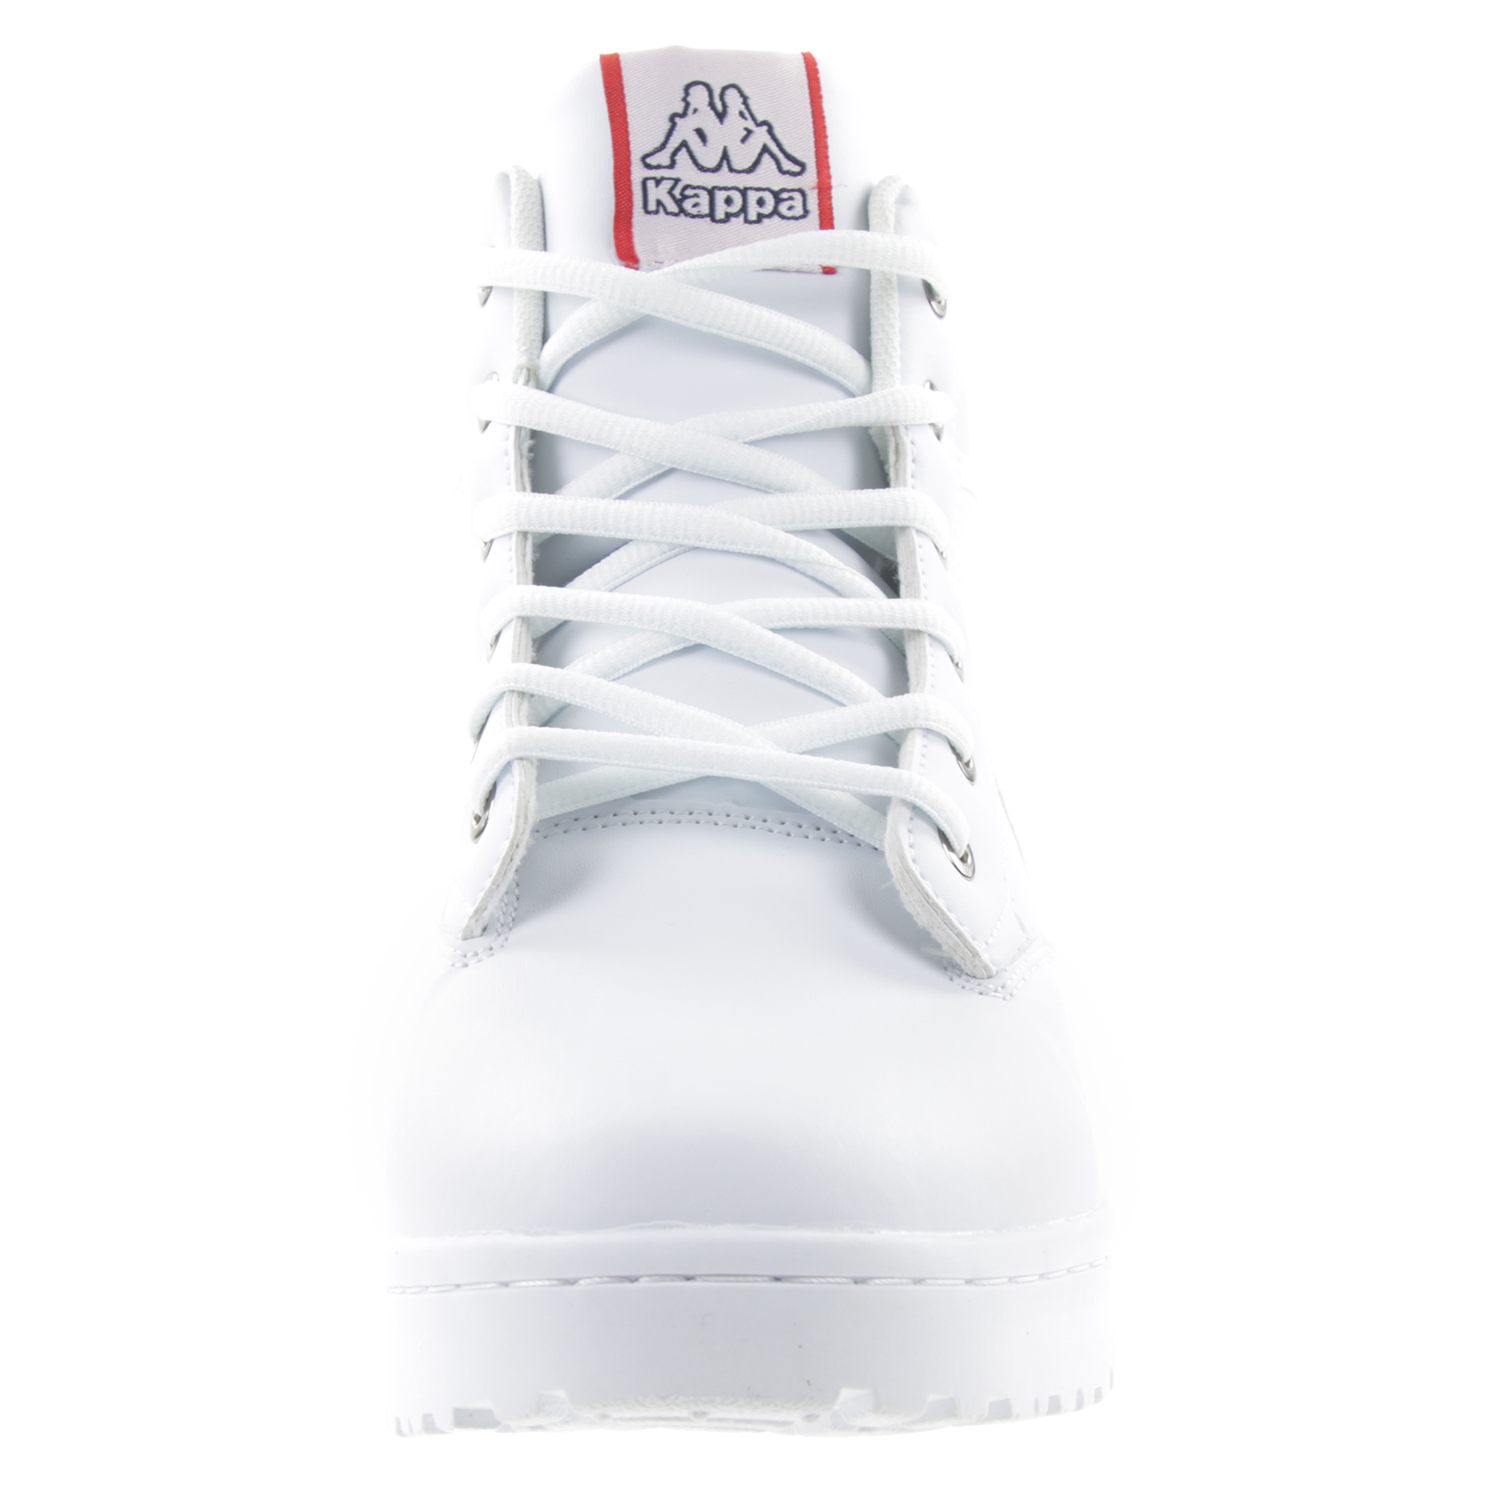 Kappa Unisex High Top Hoher Sneaker Schuhe Stylecode 242779 1010 weiss